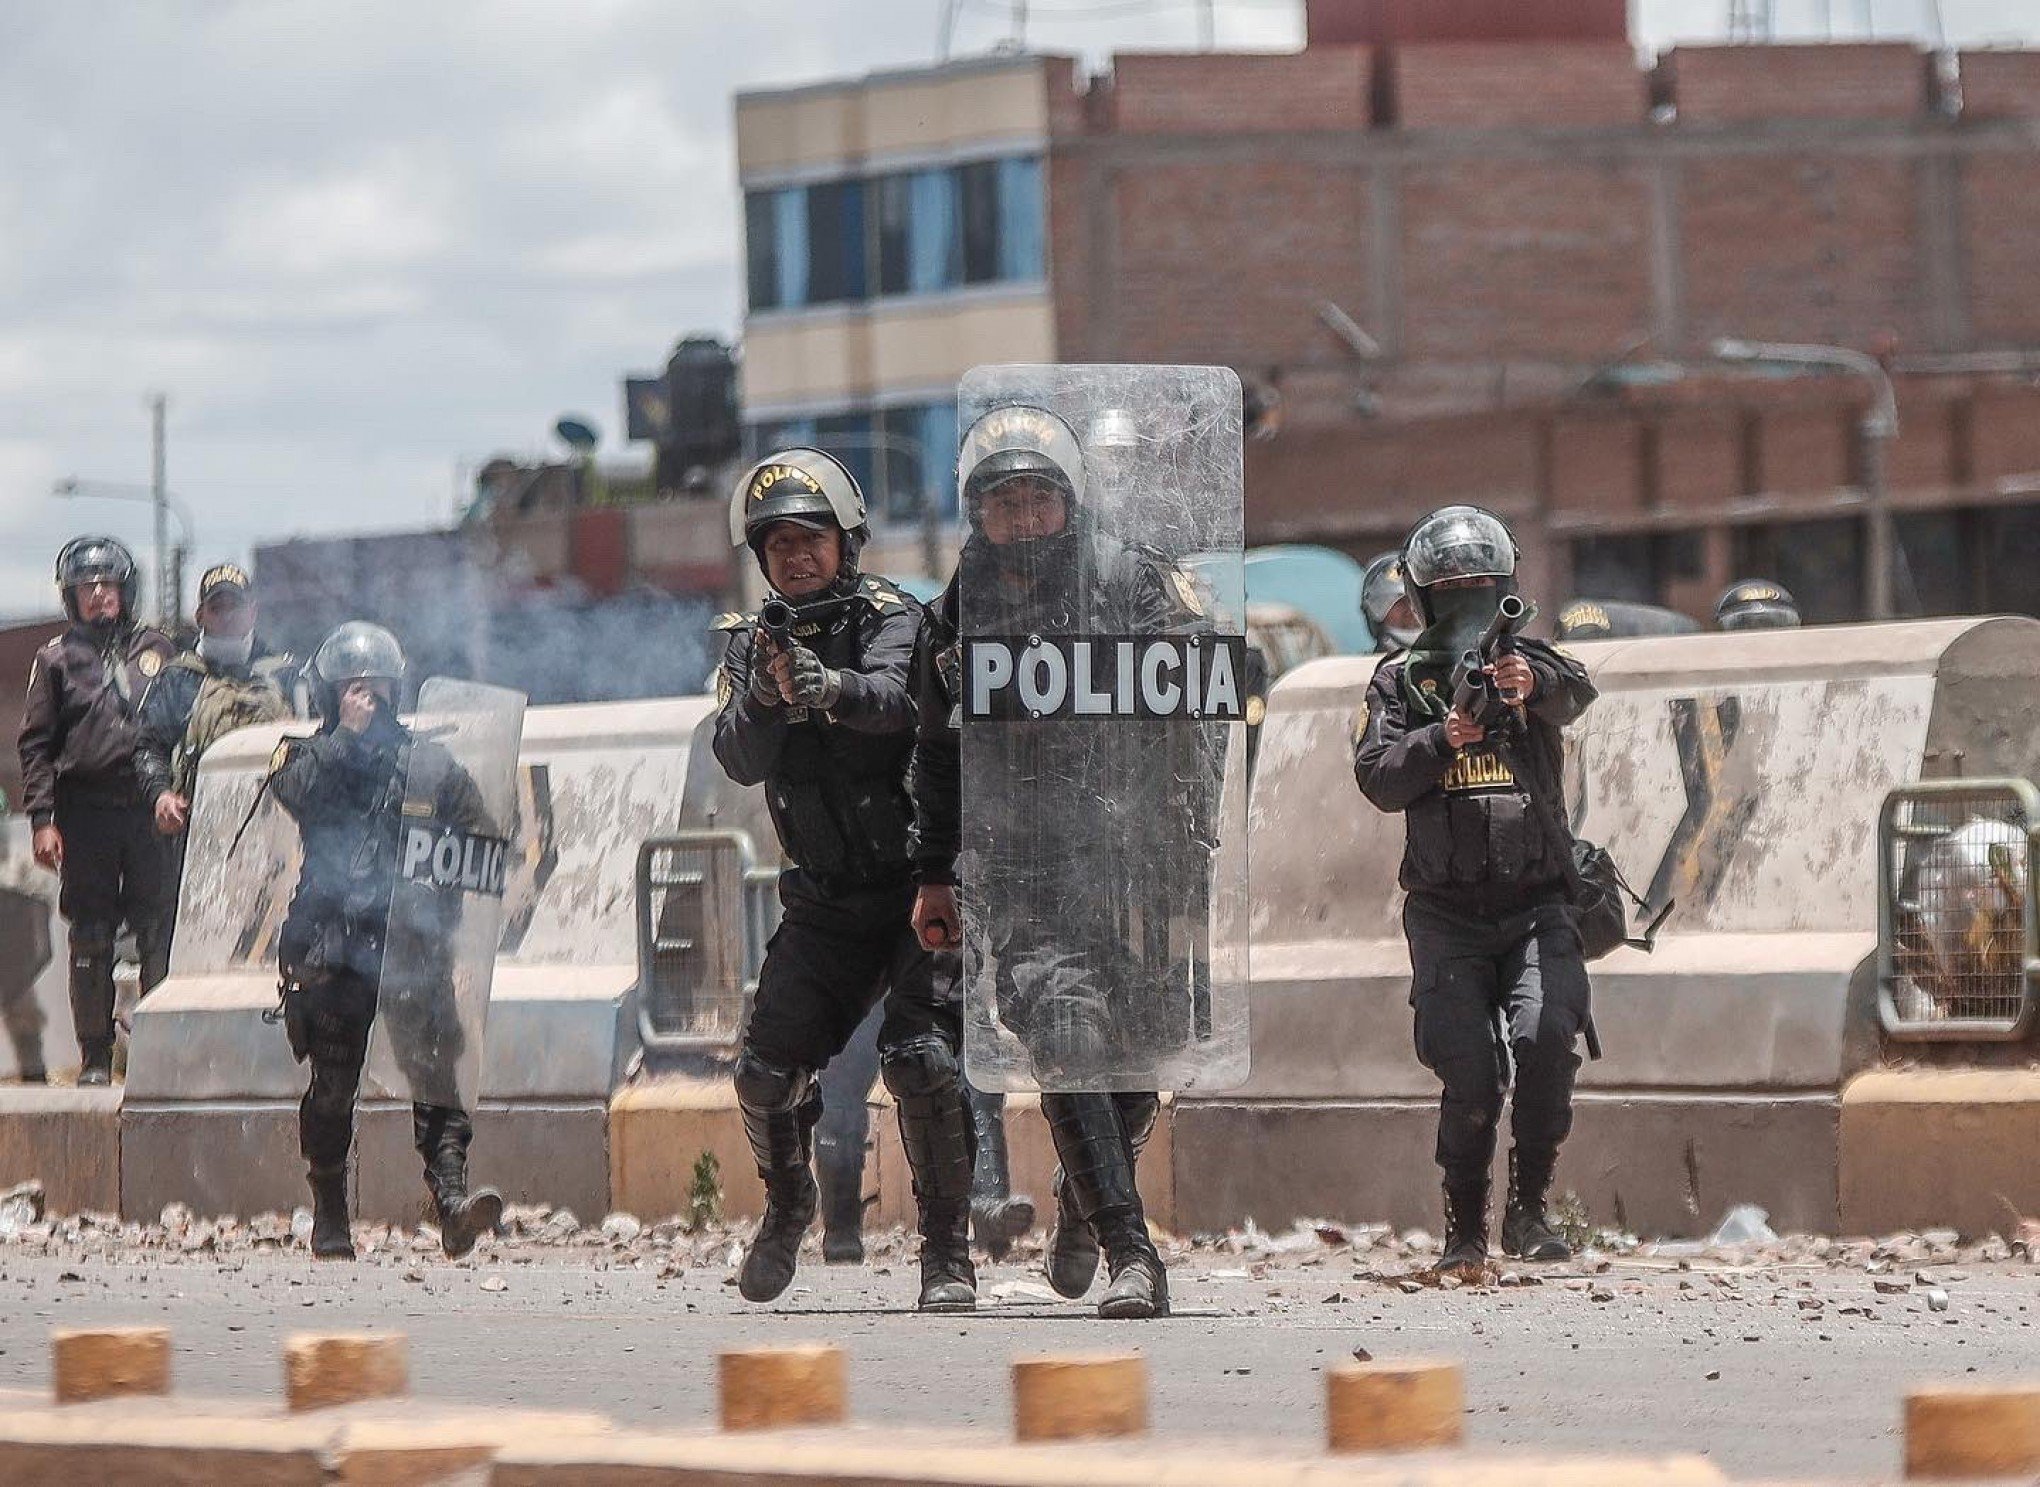 Policial é morto queimado dentro de viatura em protestos no Peru